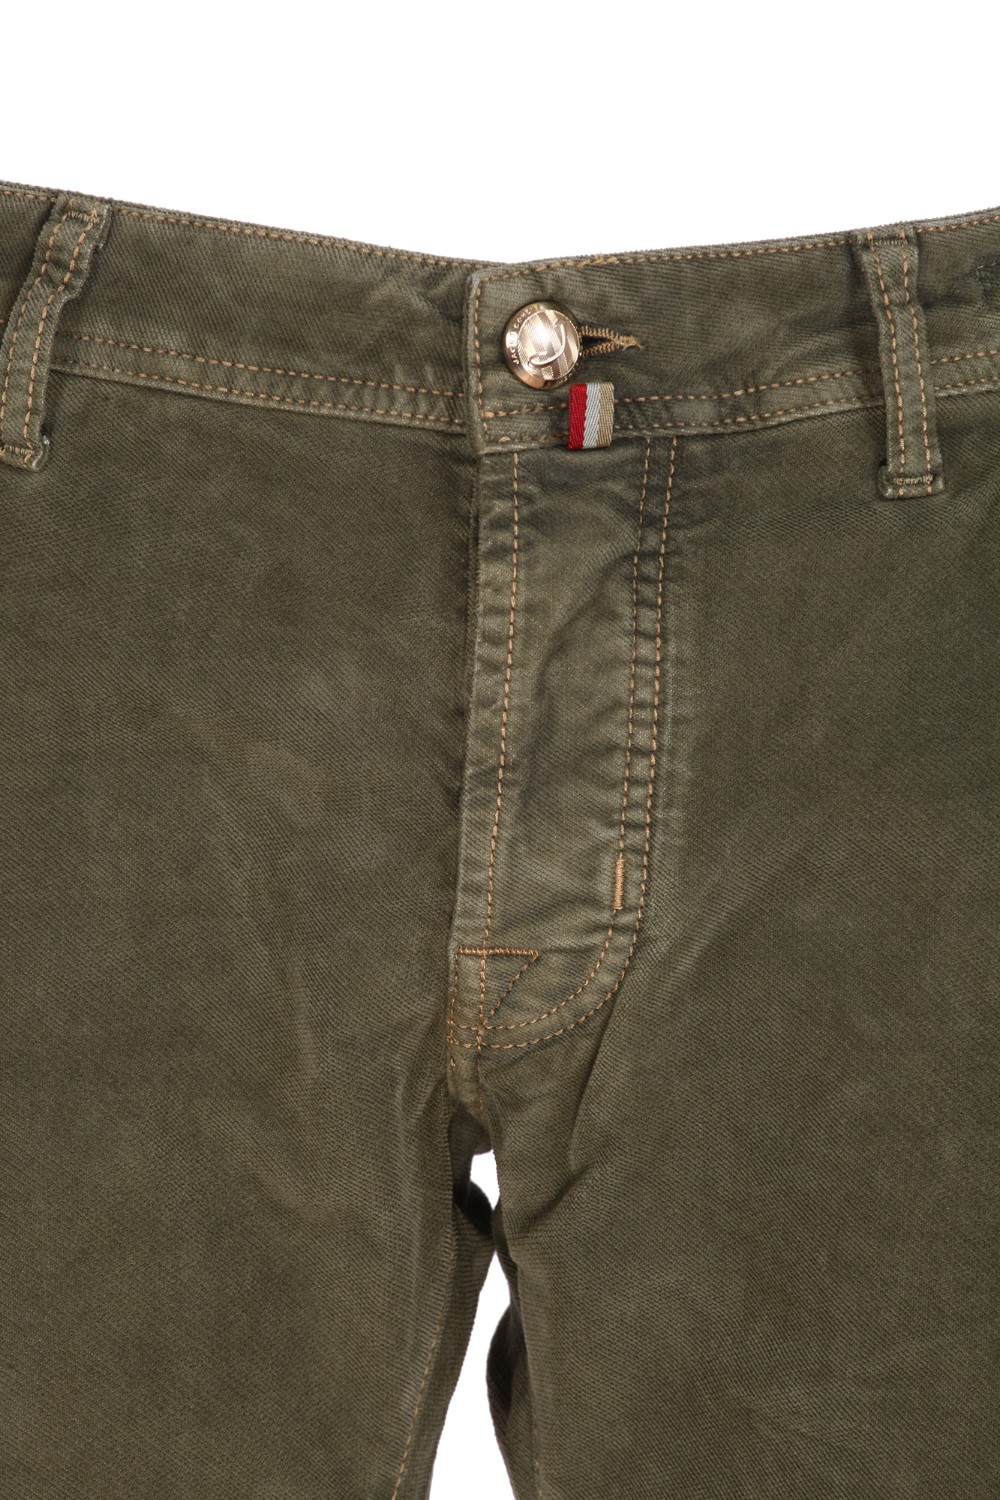 shop JACOB COHEN Sales Jeans: Jacob Cohen jeans elasticizzato, modello Leonard.
Tasche all' americana.
Tasche posteriori con ricamo e fazzoletto.
Chiusura con bottoni.
Patch in cavallino.
Composizione: 98% Cotone 2% Elastan.
Fabbricato in Italia.. LEONARD S3642-R42 number 4163390